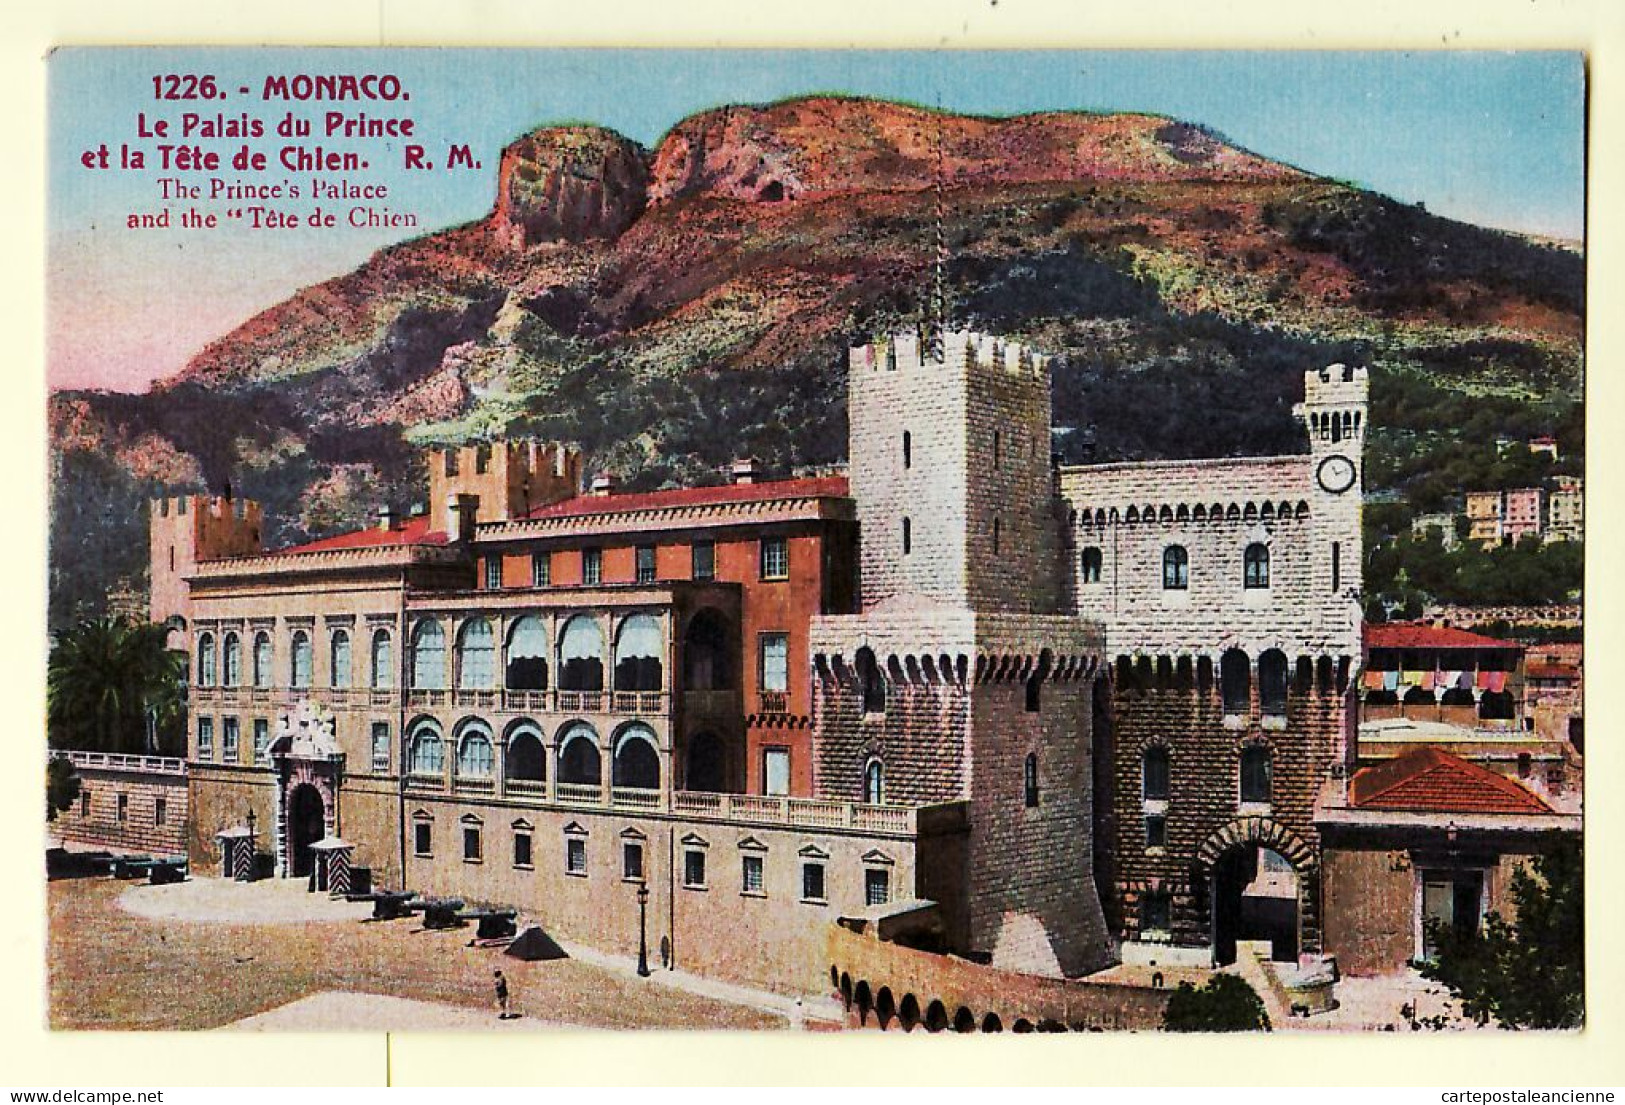 00856 ● MONTE-CARLO Monaco Le Palais Du PRINCE Et La TETE-de-CHIEN 1920s - Litho Color ROSTAN MUNIER 1226 - Monte-Carlo